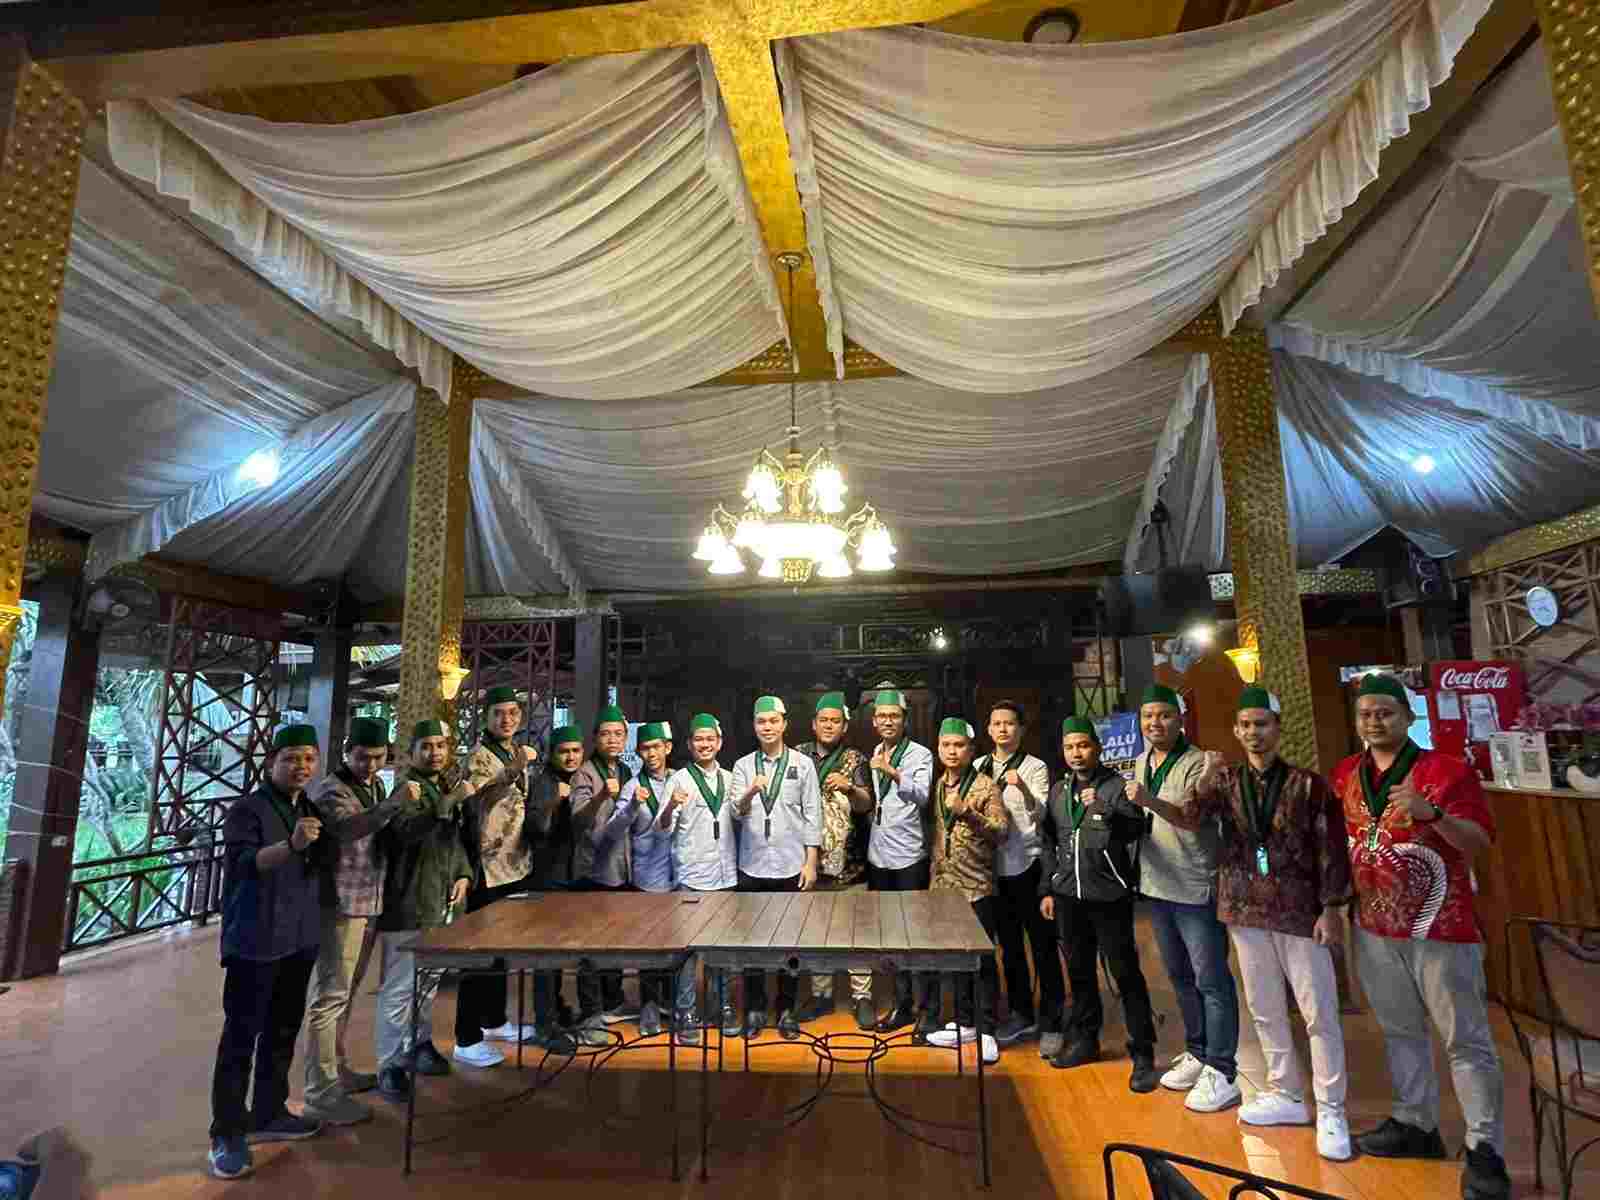 Ketua Umum Badko HMI Sulselbar A. Ikram Rifqi Bersama Ketua Umum PB HMI menandatangani 10 tuntutan yang menjadi pernyataan sikap di internal HMI dalam menyikapi pemerintah yang dilaksanakan di Bogor, Jawa Barat pada Minggu, 10 April 2022.